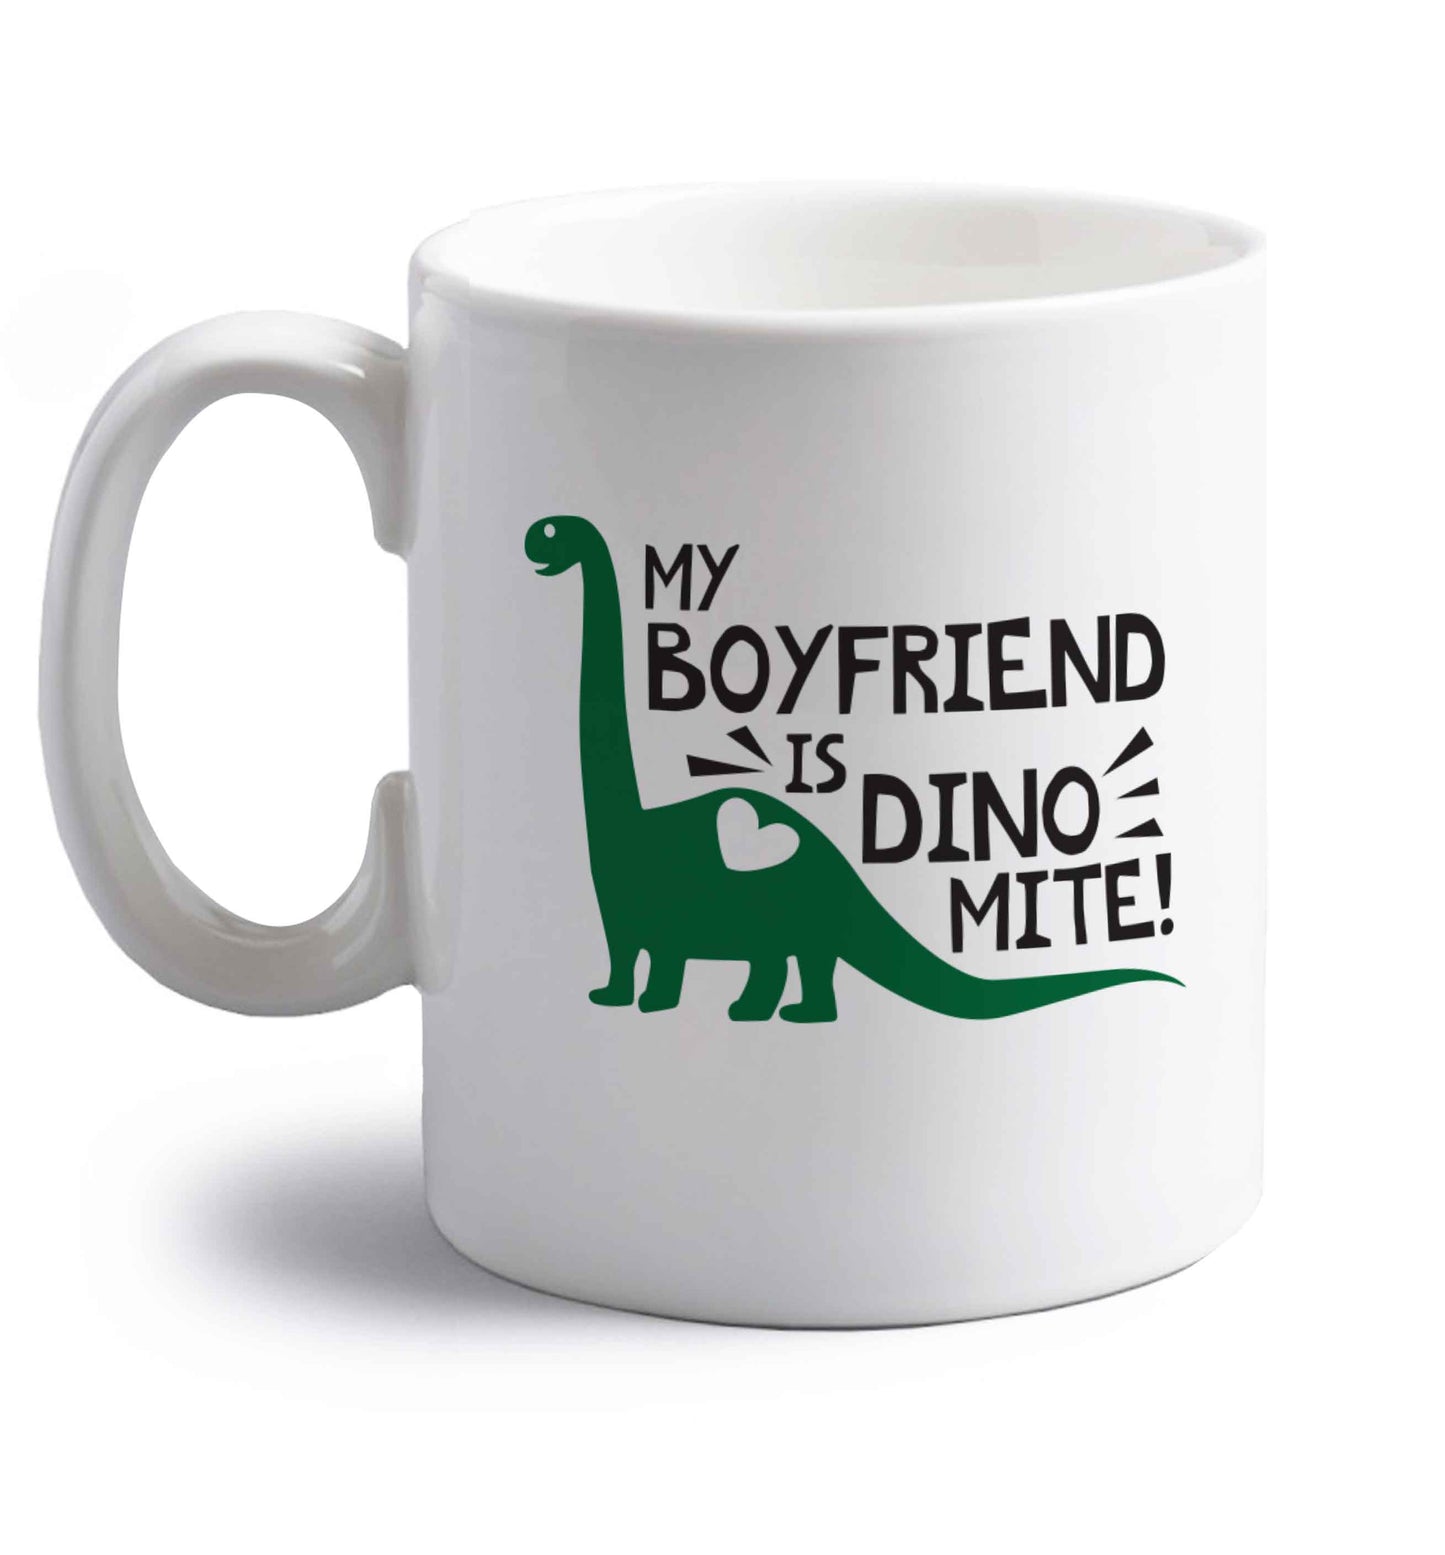 My boyfriend is dinomite! right handed white ceramic mug 